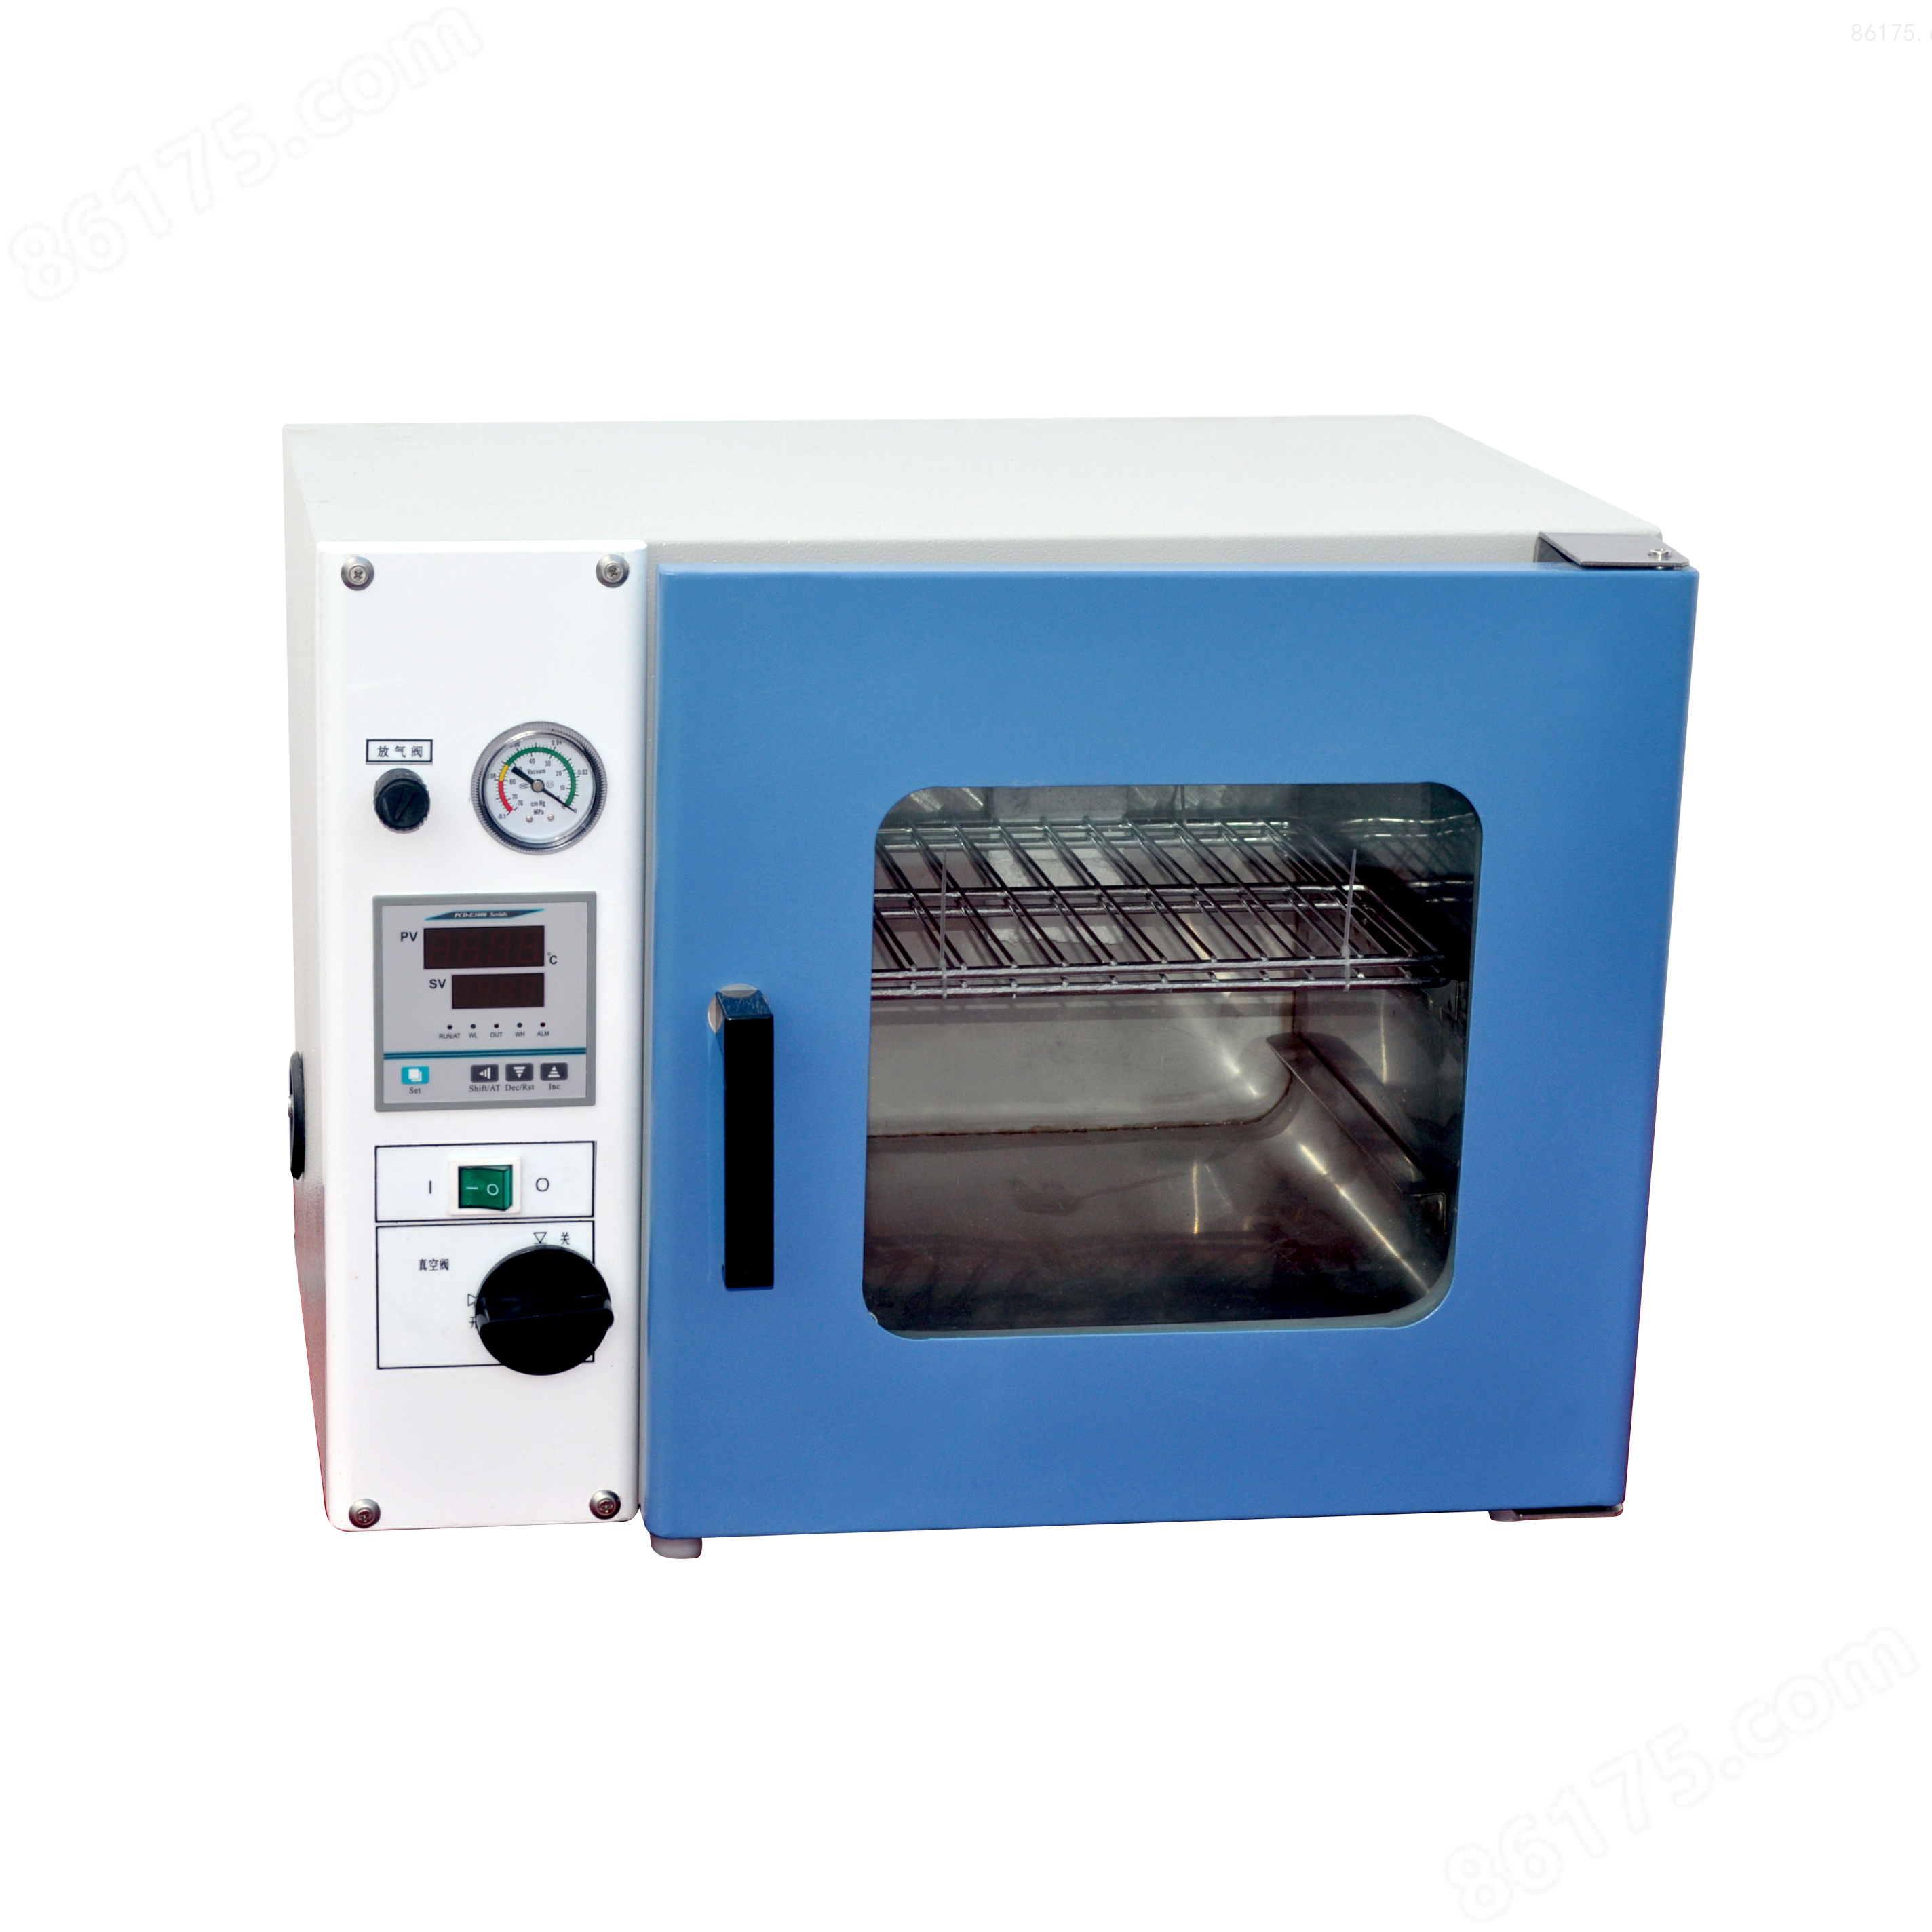 真空干燥箱DZF-6050高温烘箱